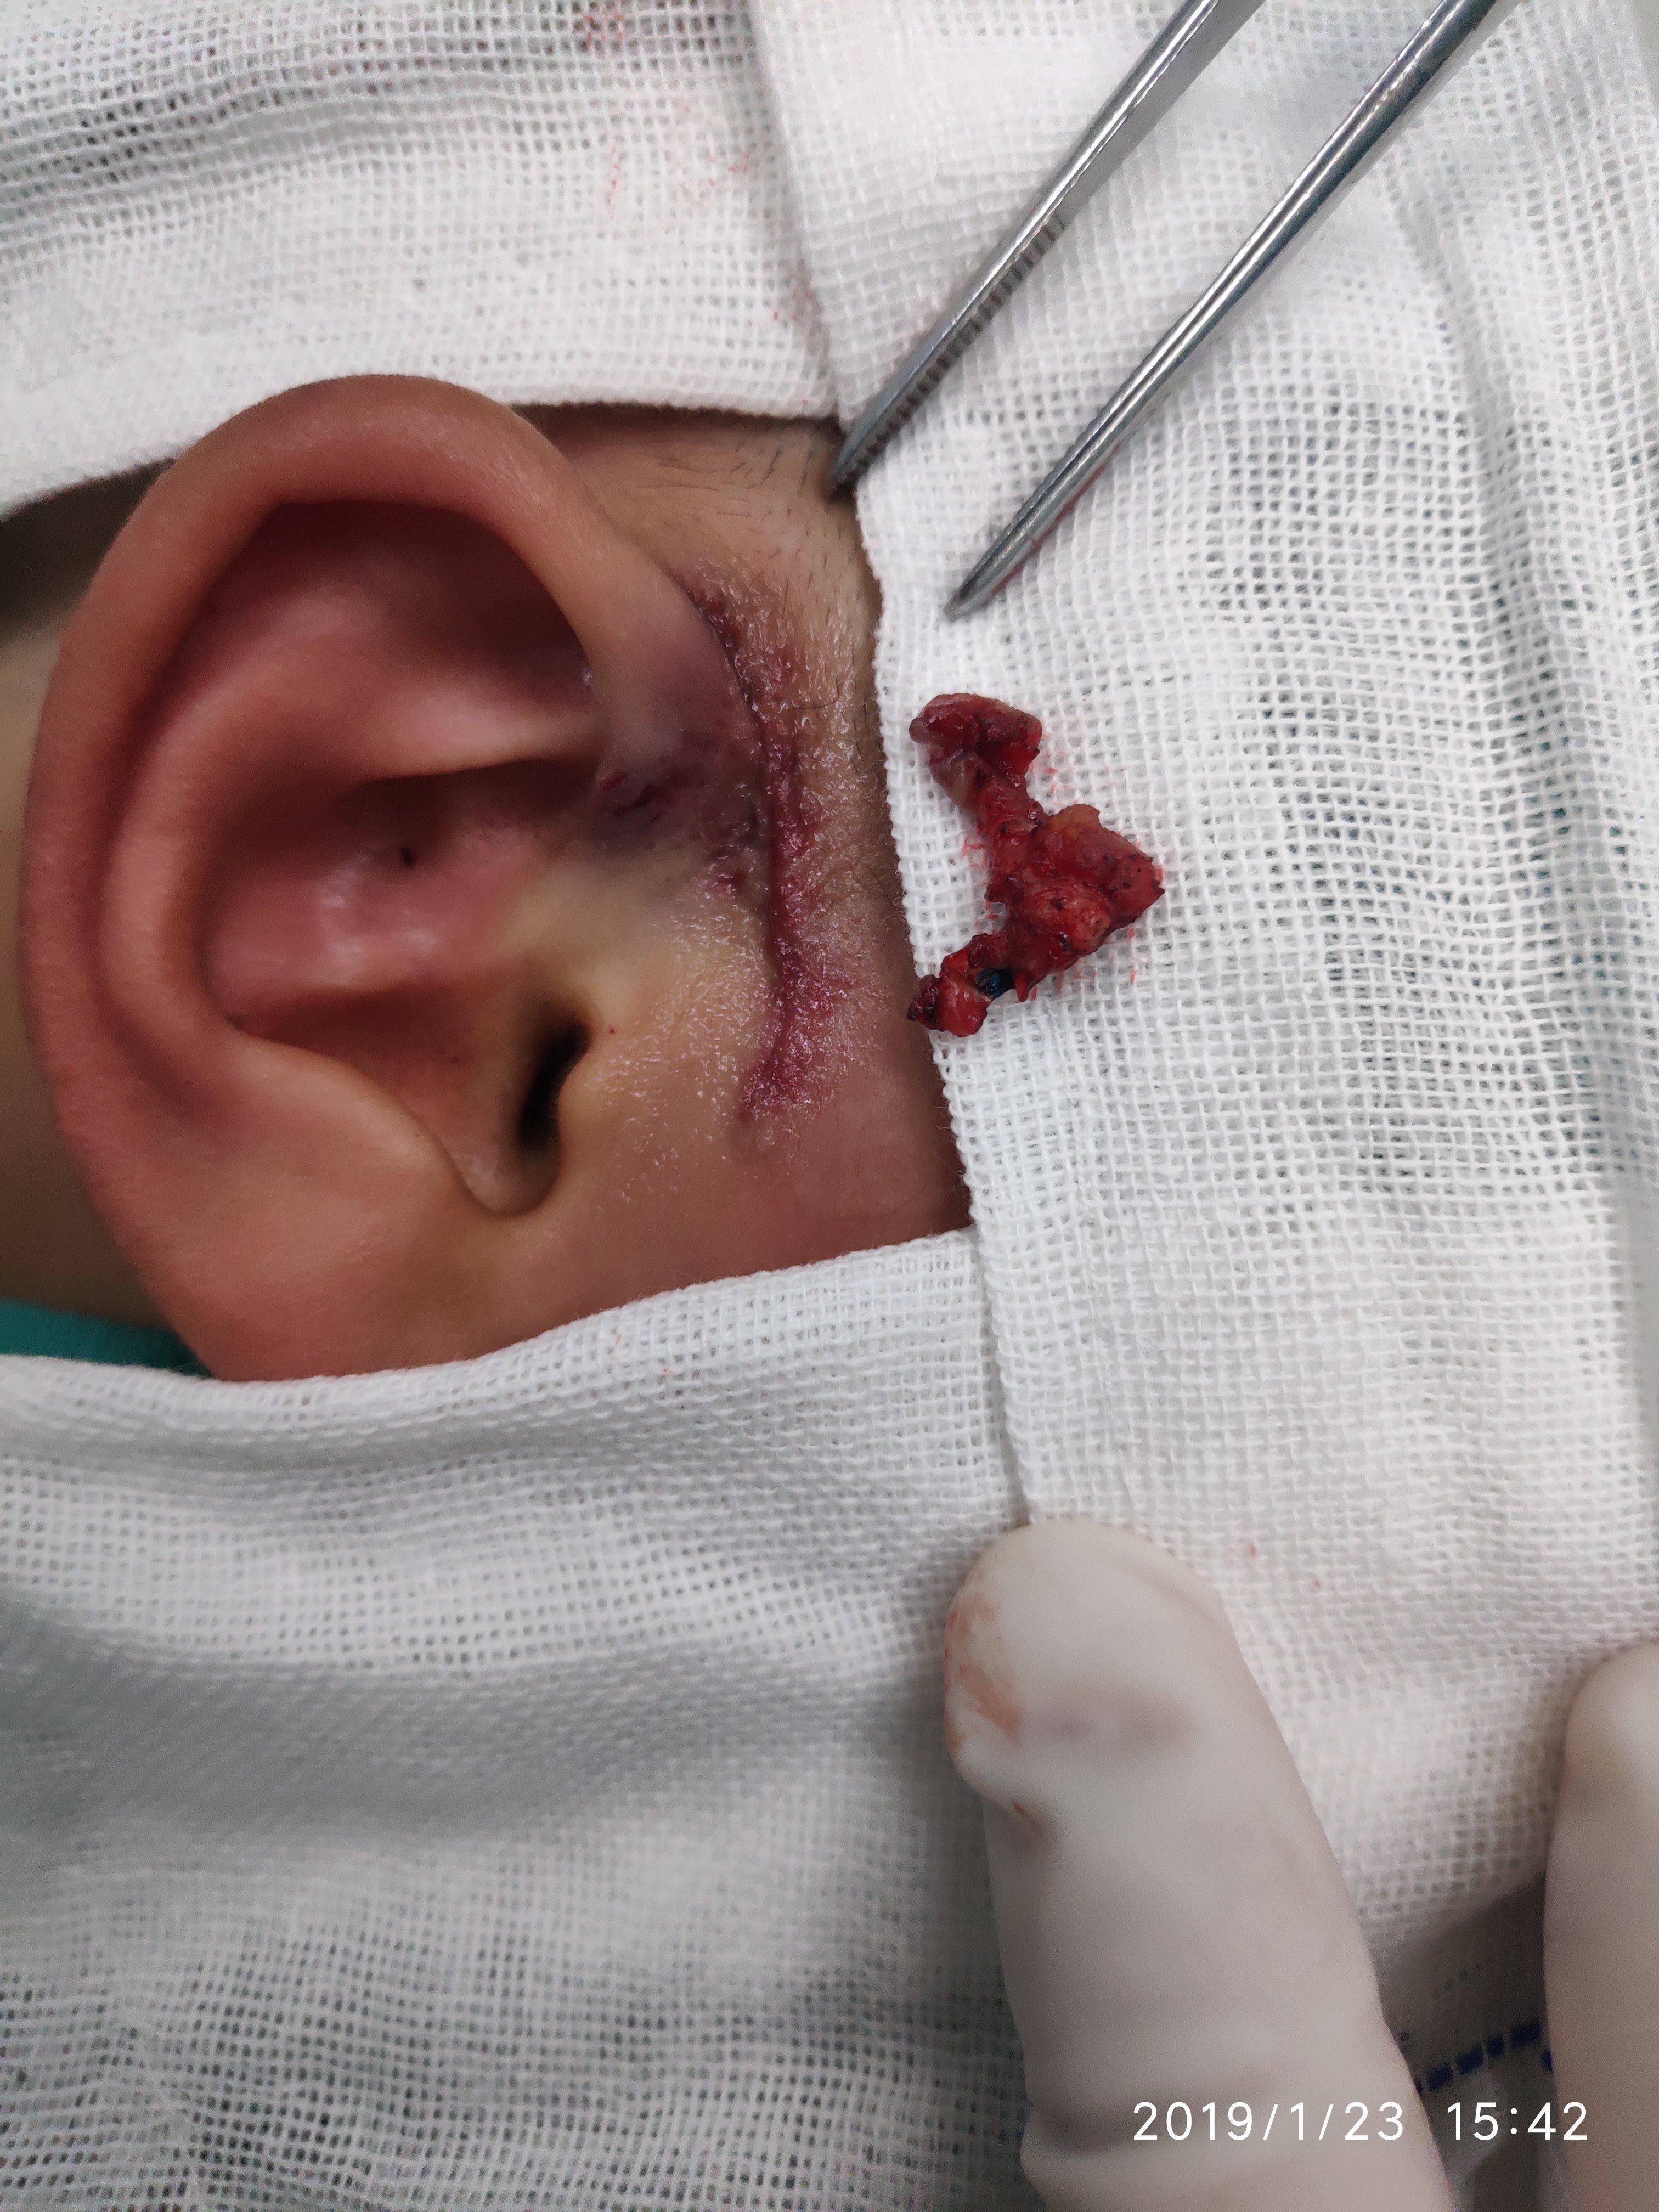 耳前瘘管手术过程图片